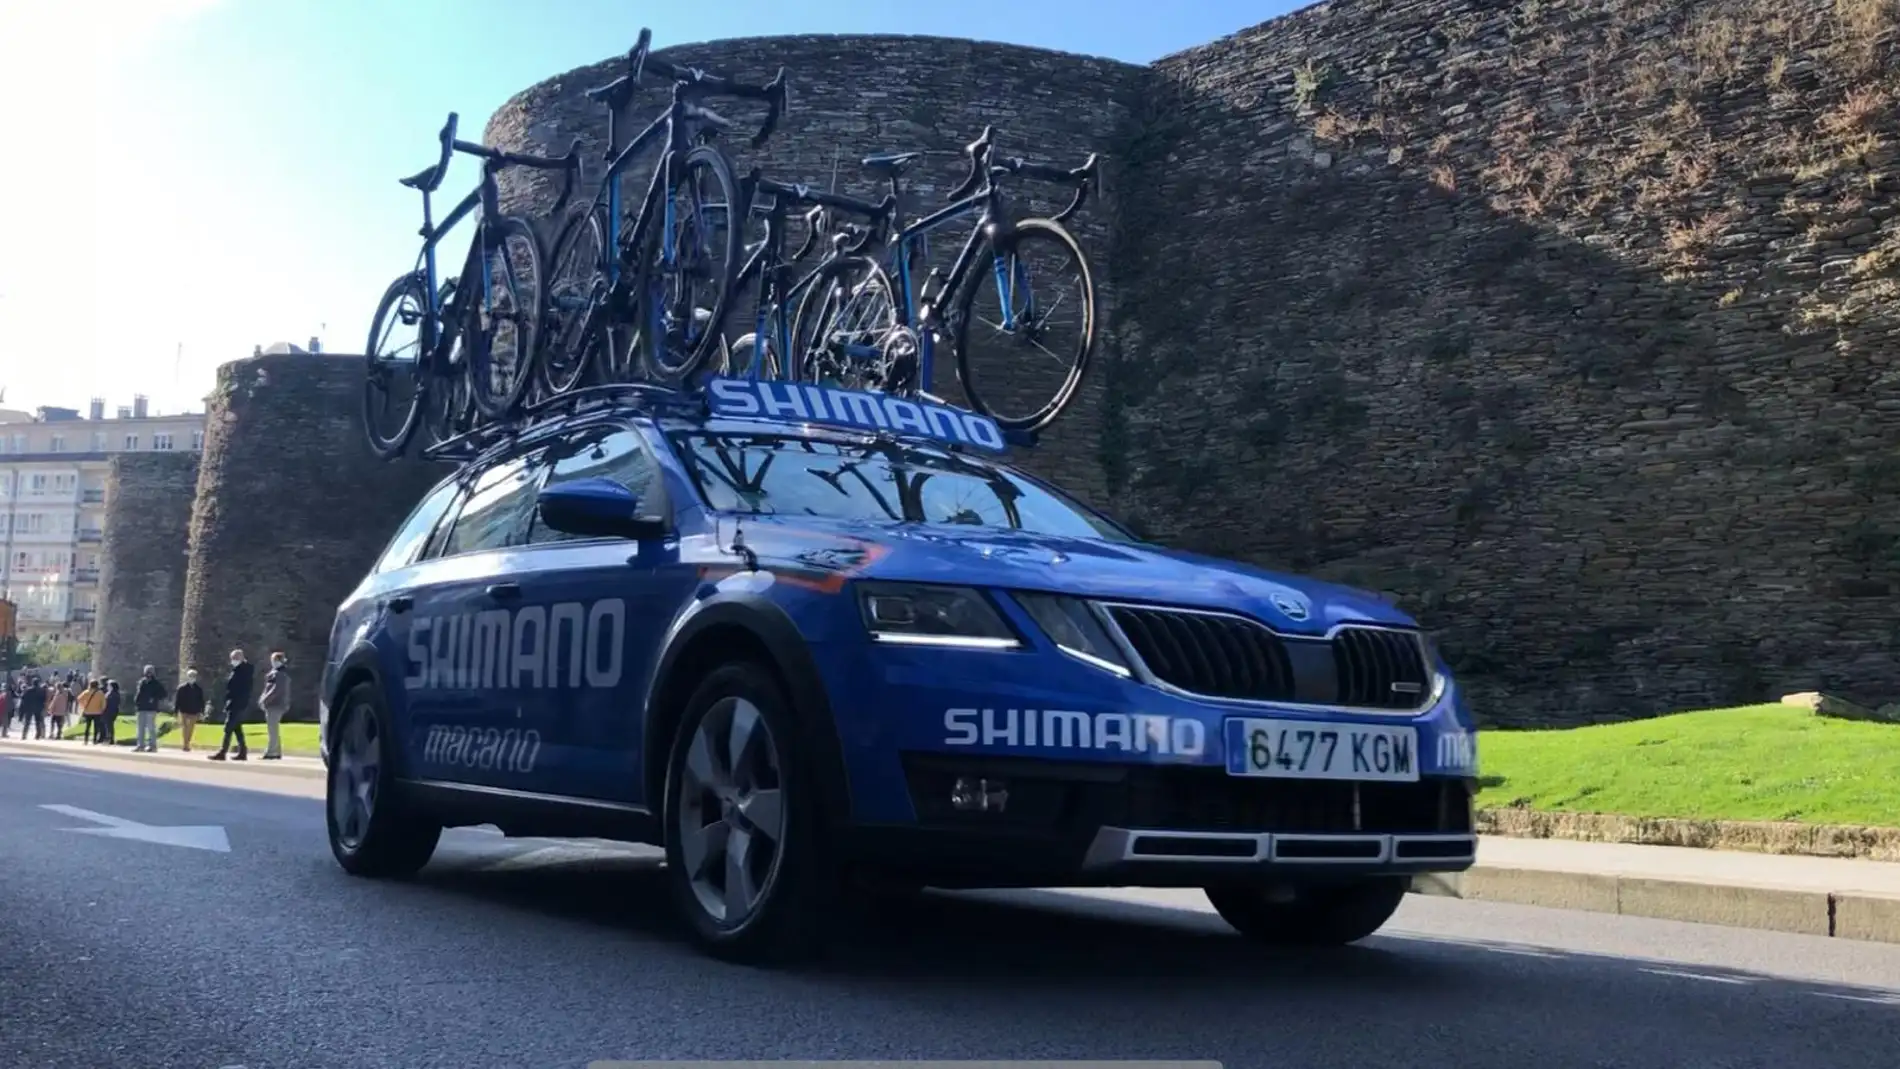 Llega a Lugo la Vuelta Ciclista a España